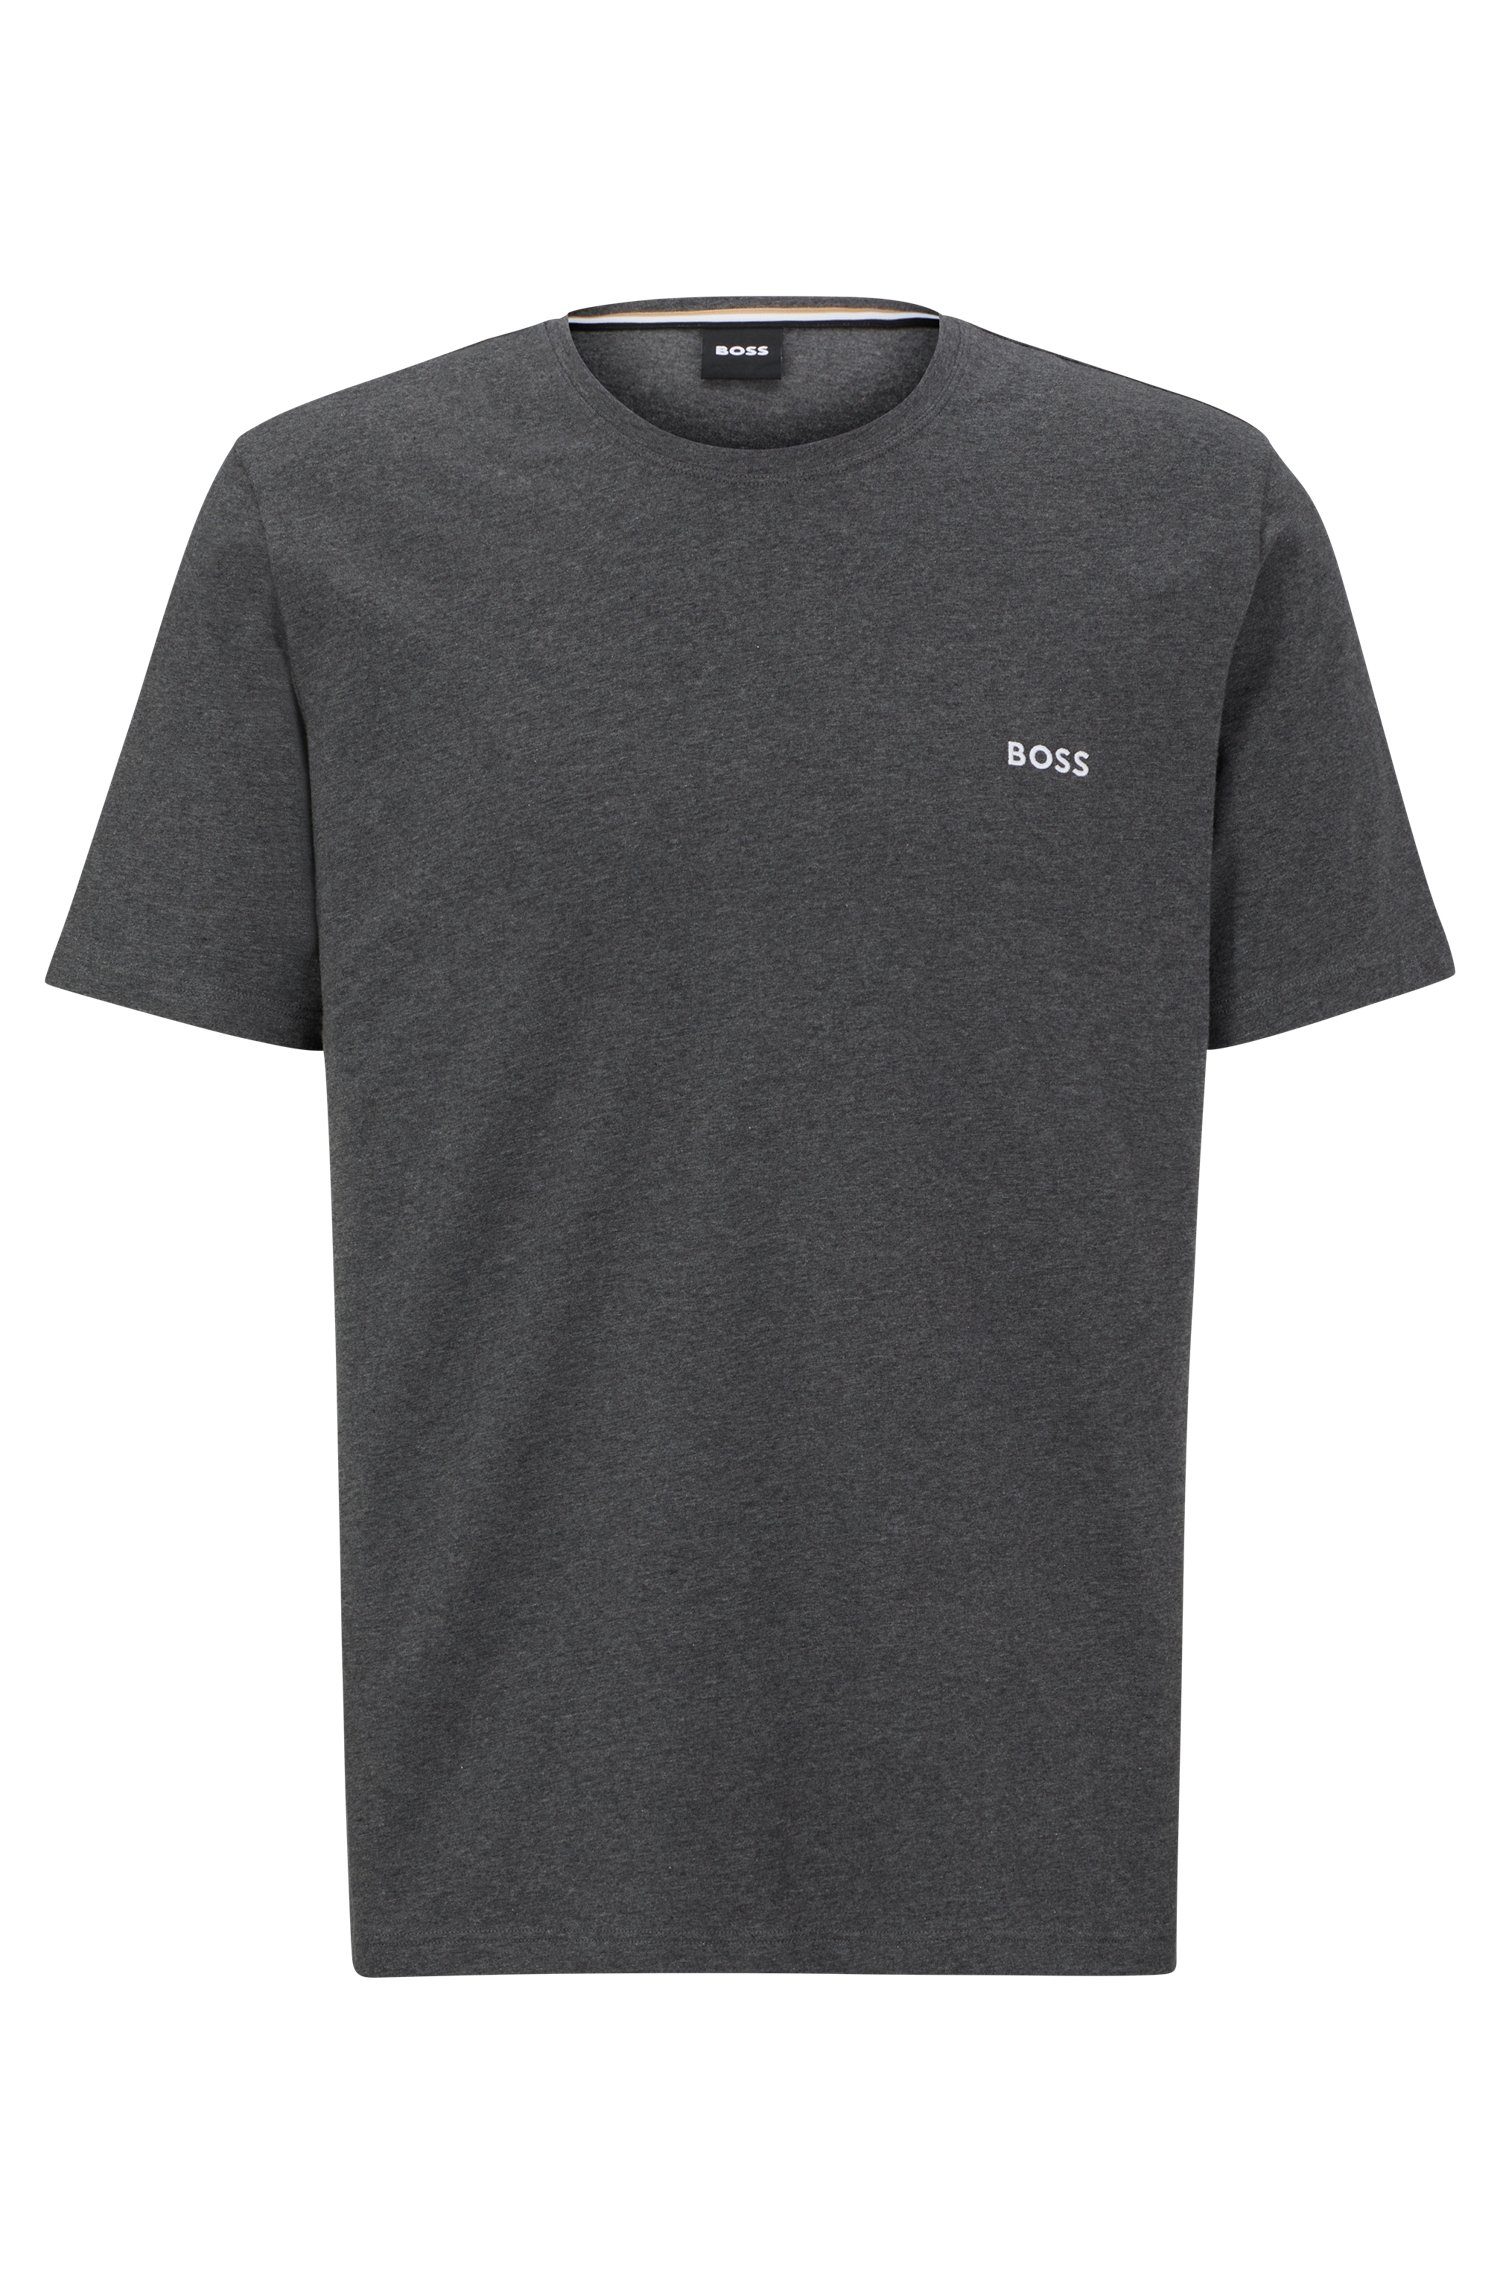 BOSS T-Shirt Mix&Match T-Shirt Charcoal Mit der BOSS auf Brust Stickerei R